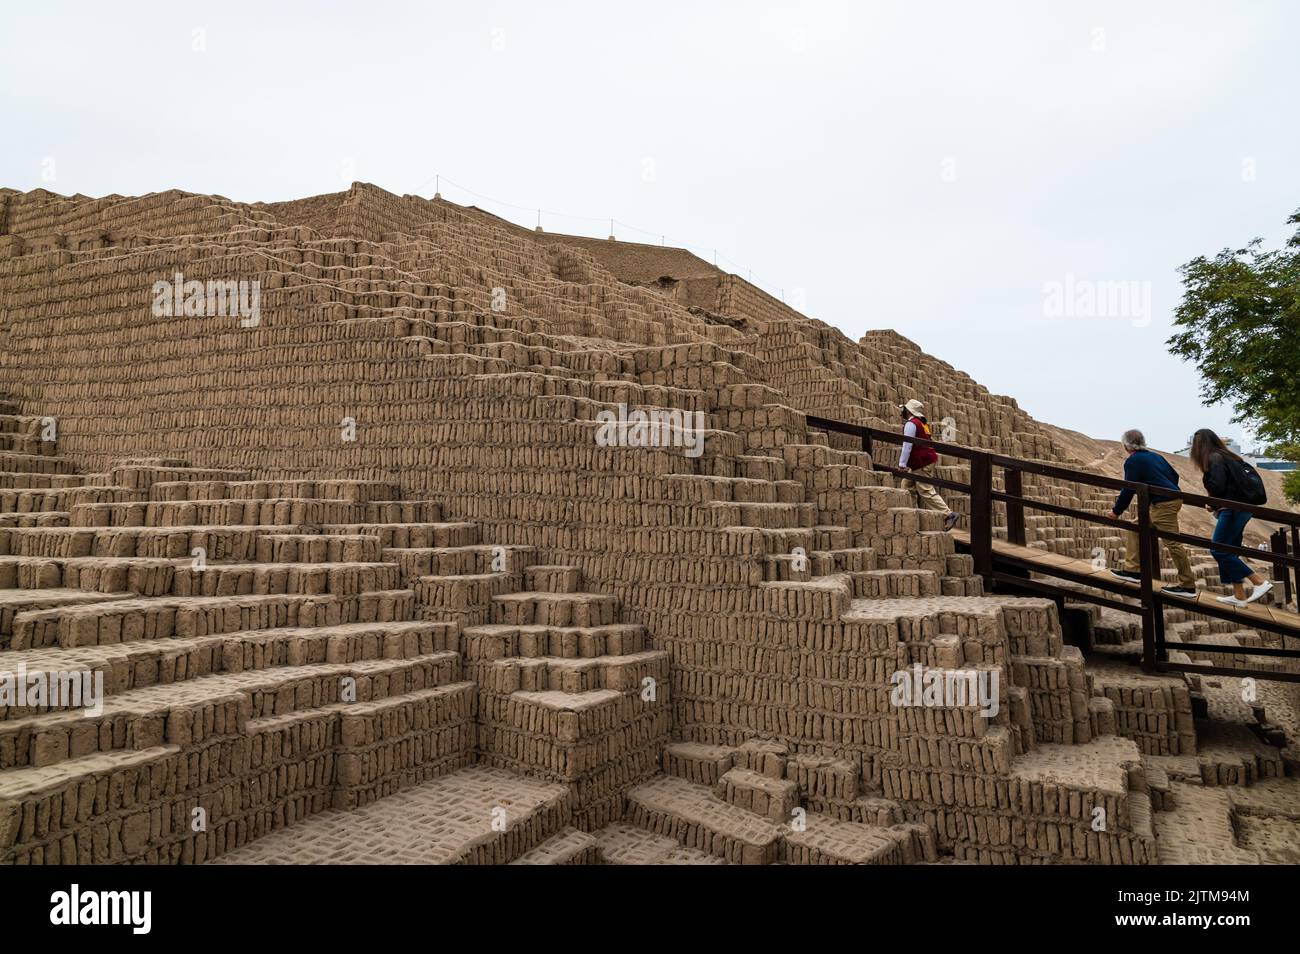 Ein Reiseleiter führt die Touristen die Stufen des Pyramidenabschnitts der historischen Ruinen von Huaca Pucllana hinauf. Der Komplex befindet sich in Miraflores. Stockfoto